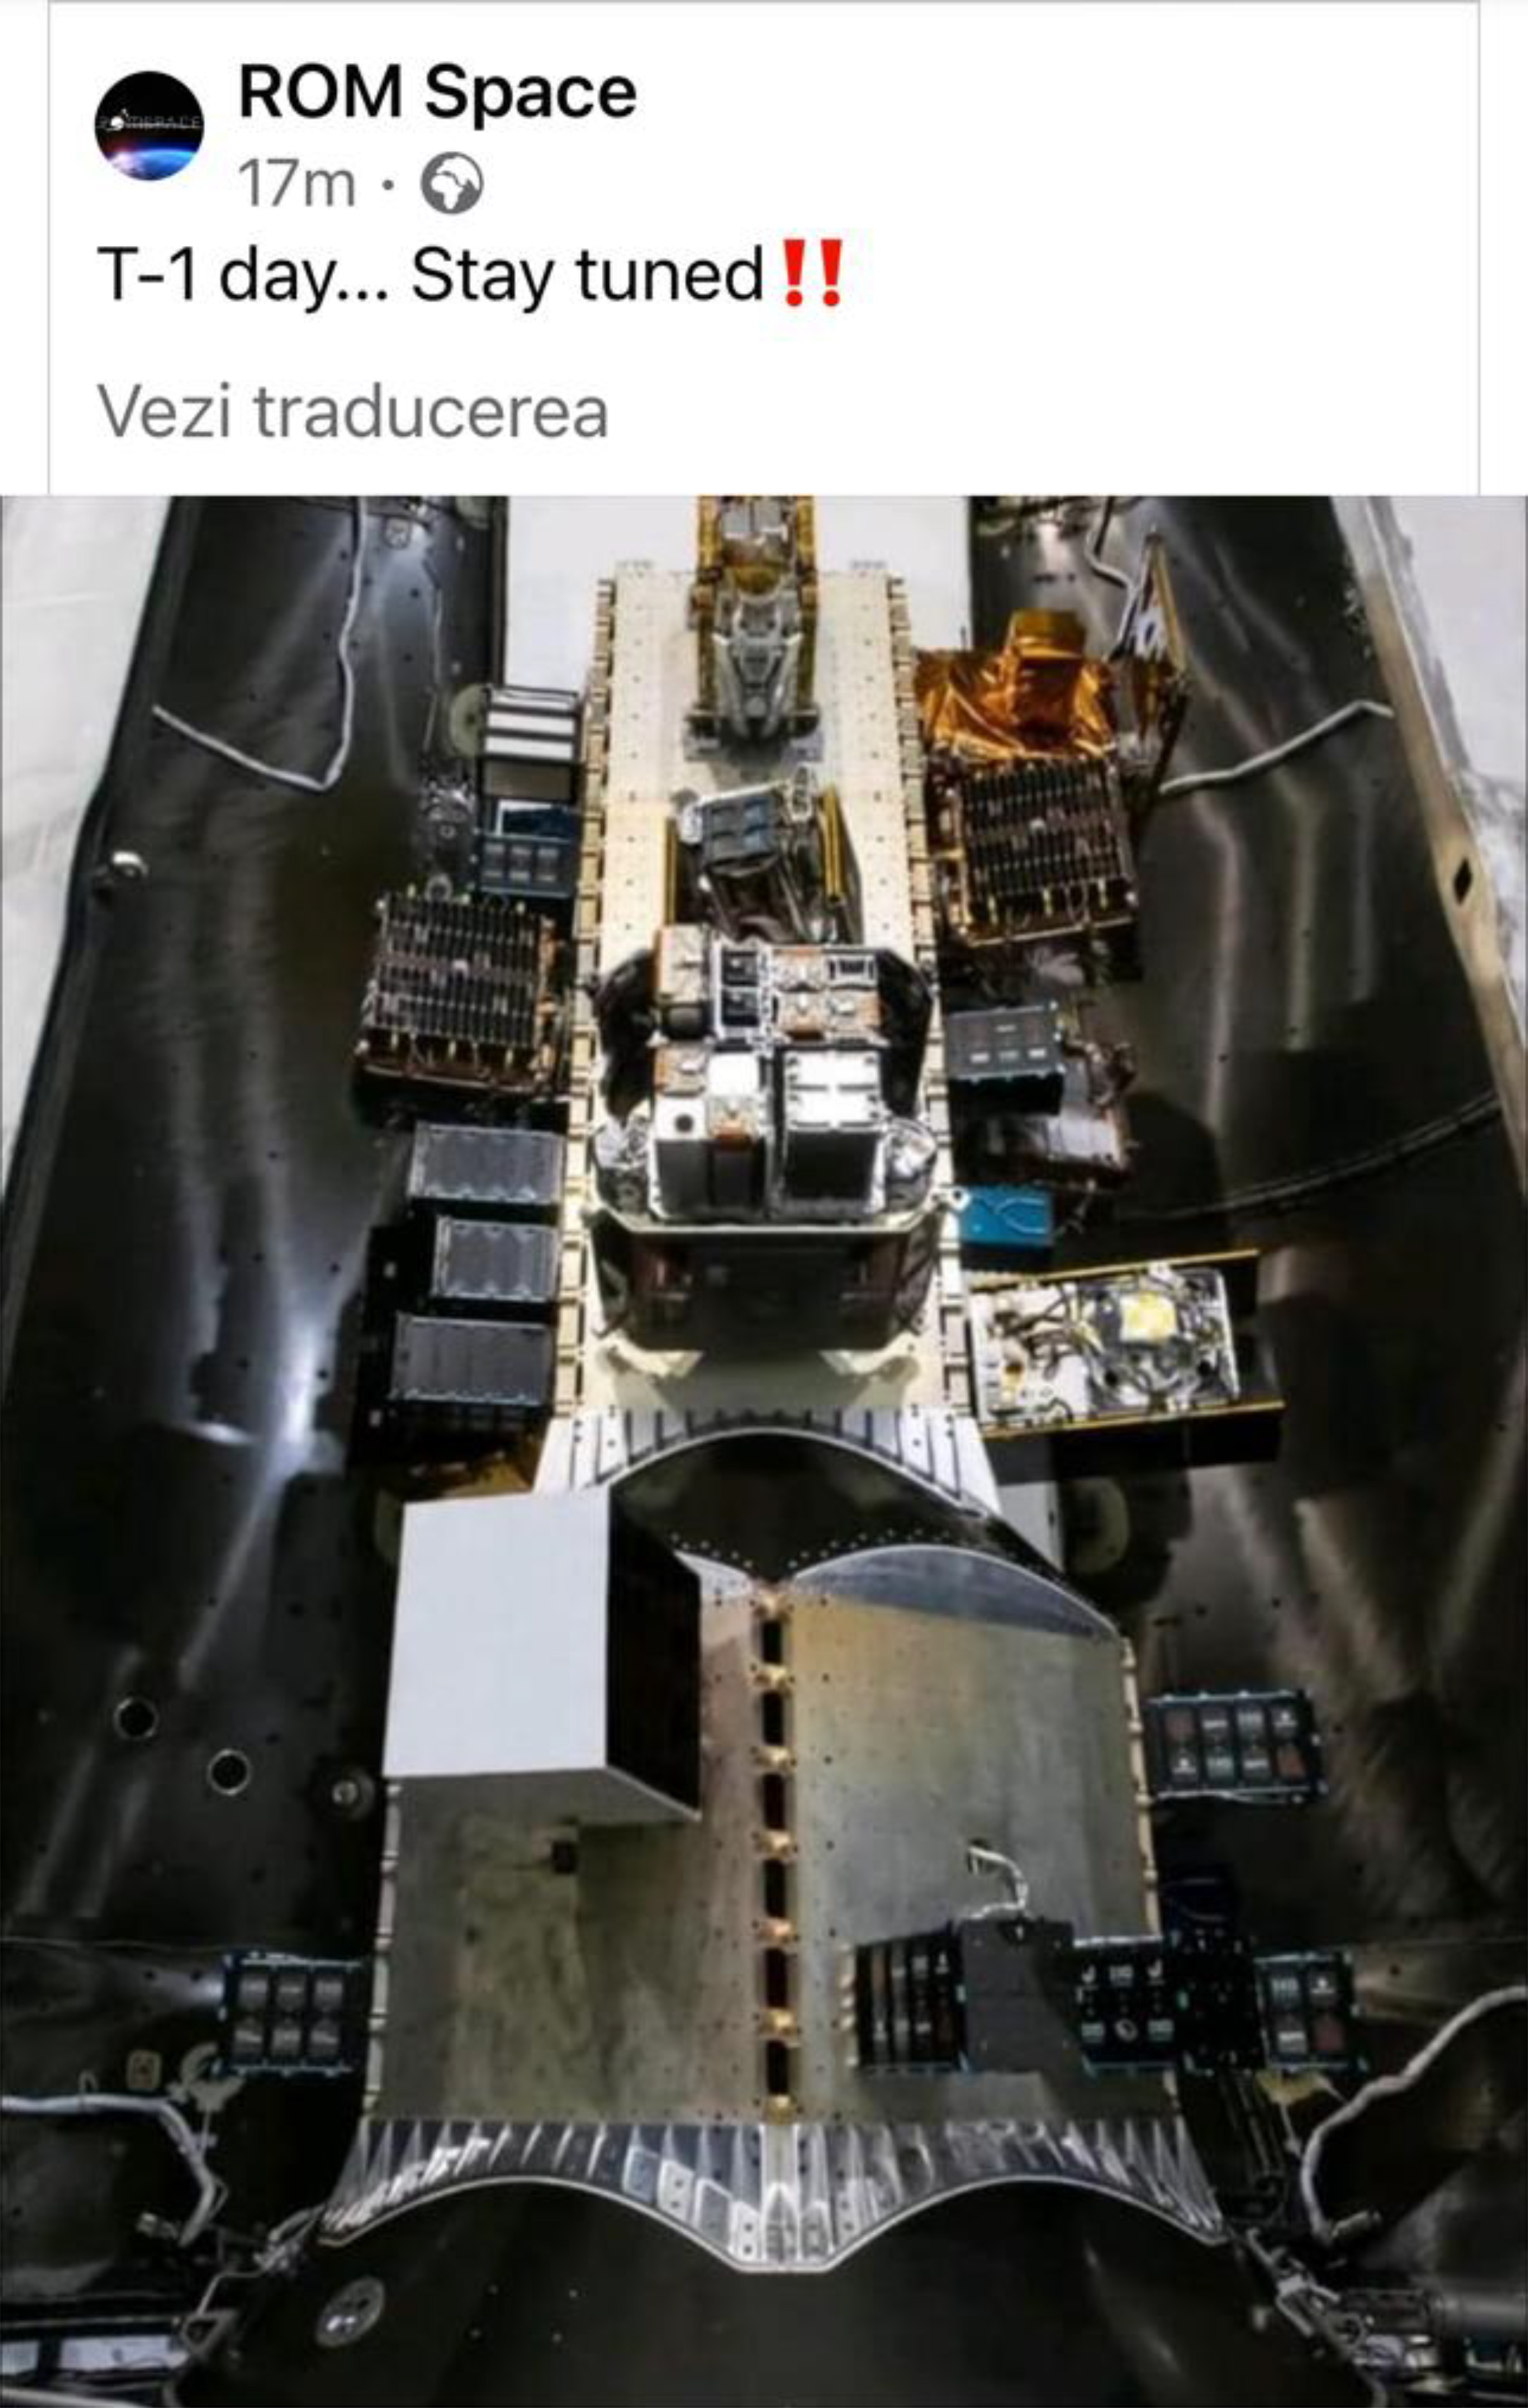 ROM-3, al doilea satelit românesc construit de elevi, a ajuns pe orbită și este operațional